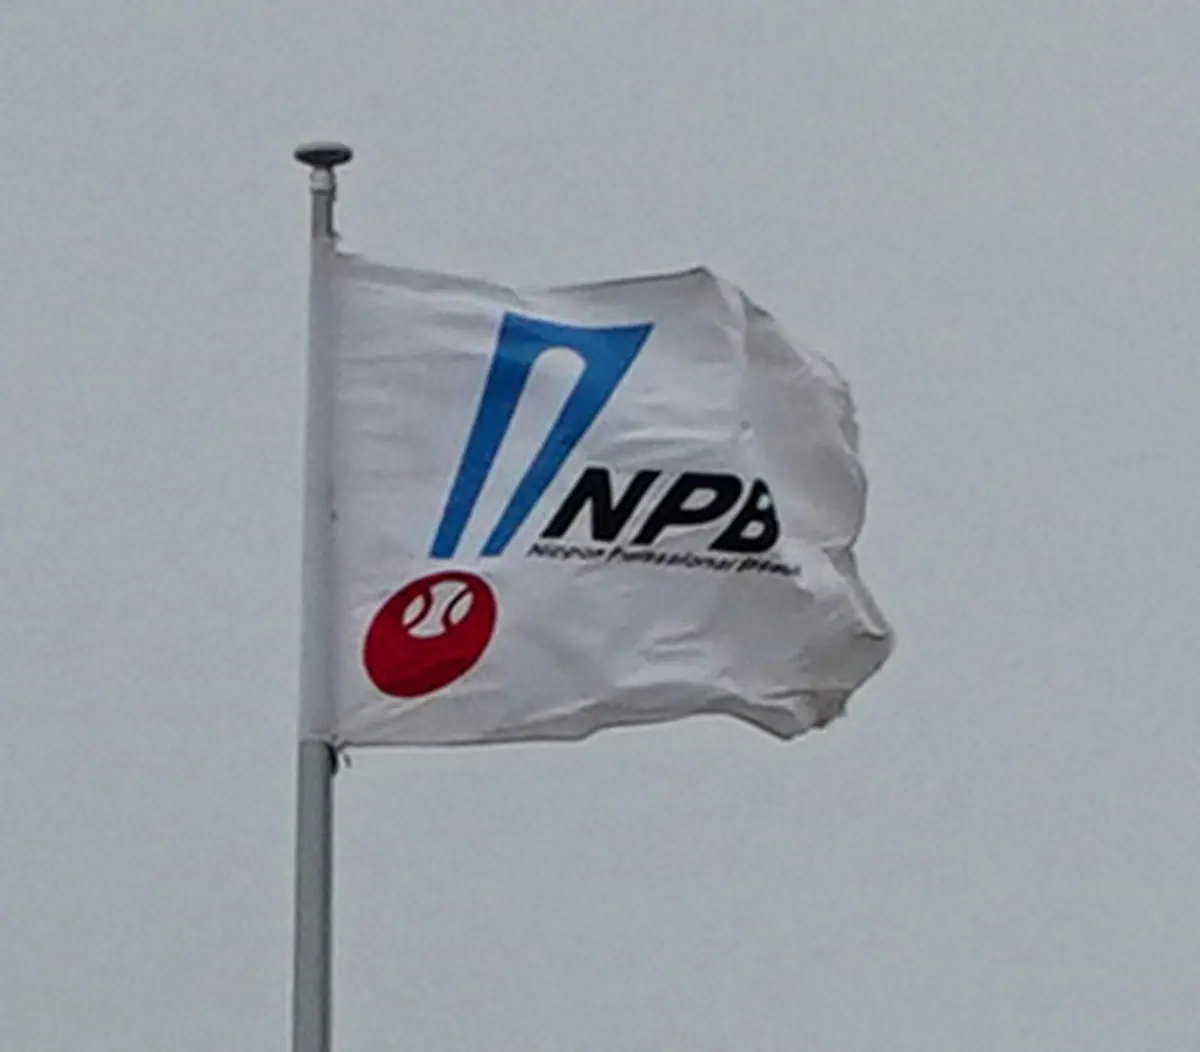 NPB　ファーム拡大第2回説明会　信濃、富山、石川、社会人野球「鹿児島ドリームウェーブ」が参加